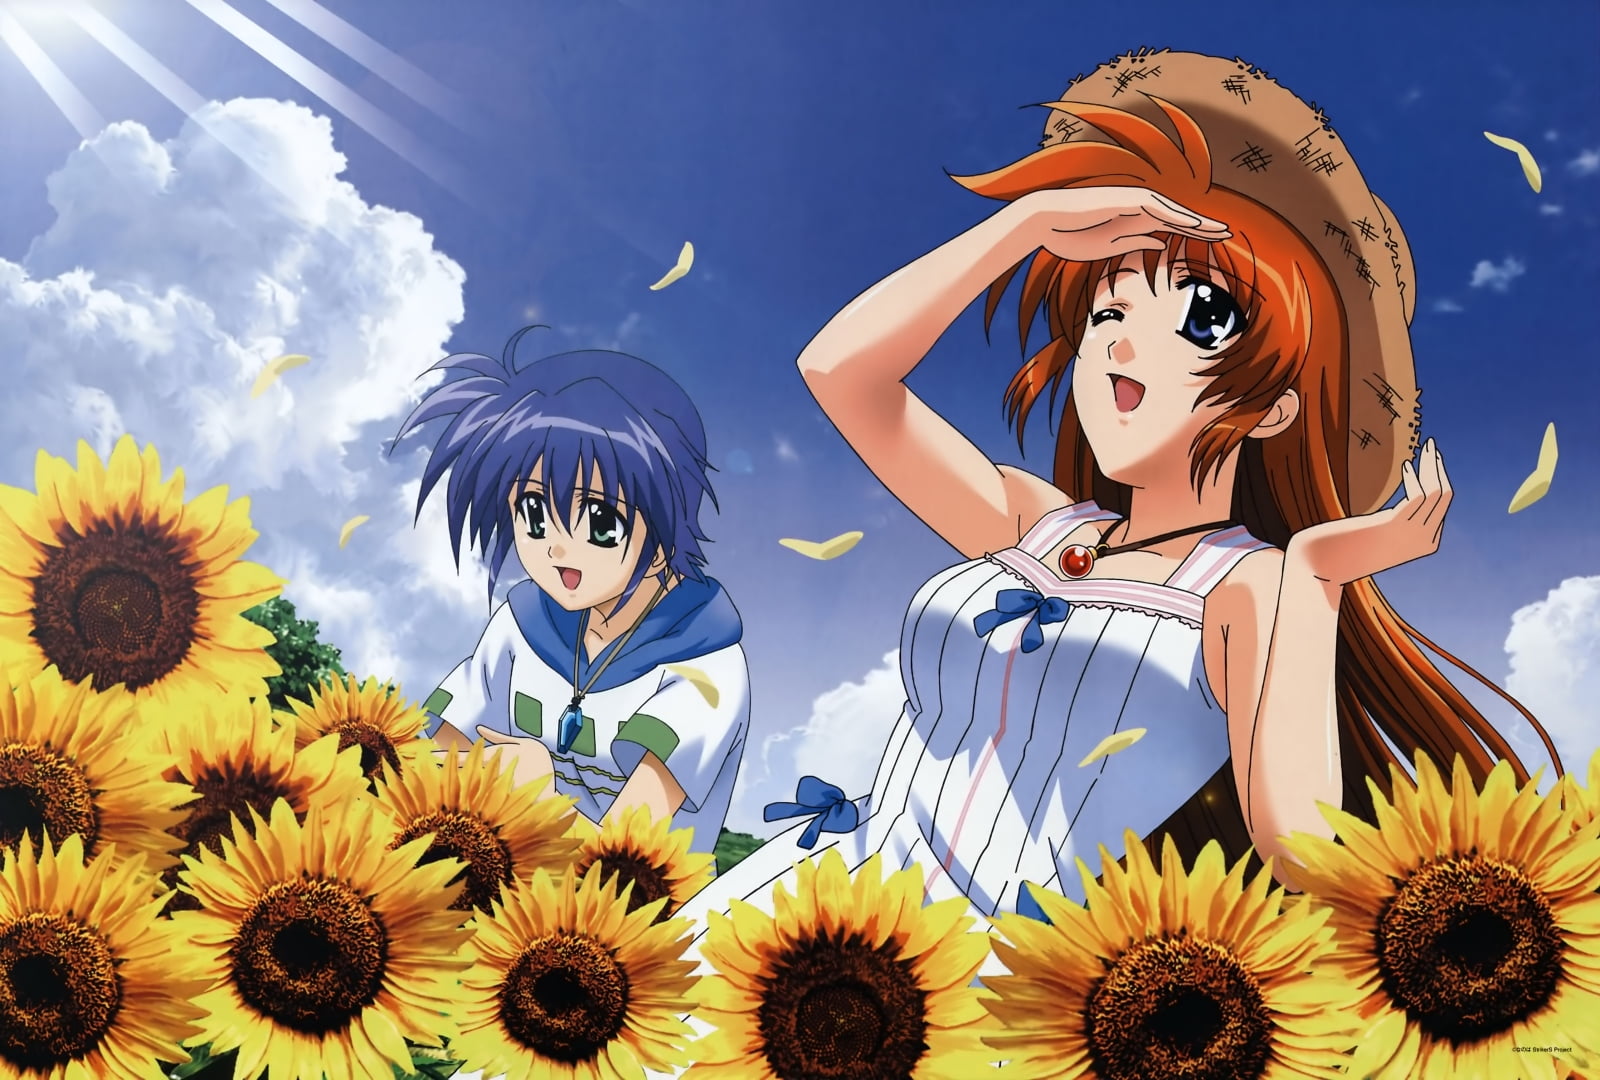 Sunflower Anime Girl Live Wallpaper - Live Wallpaper